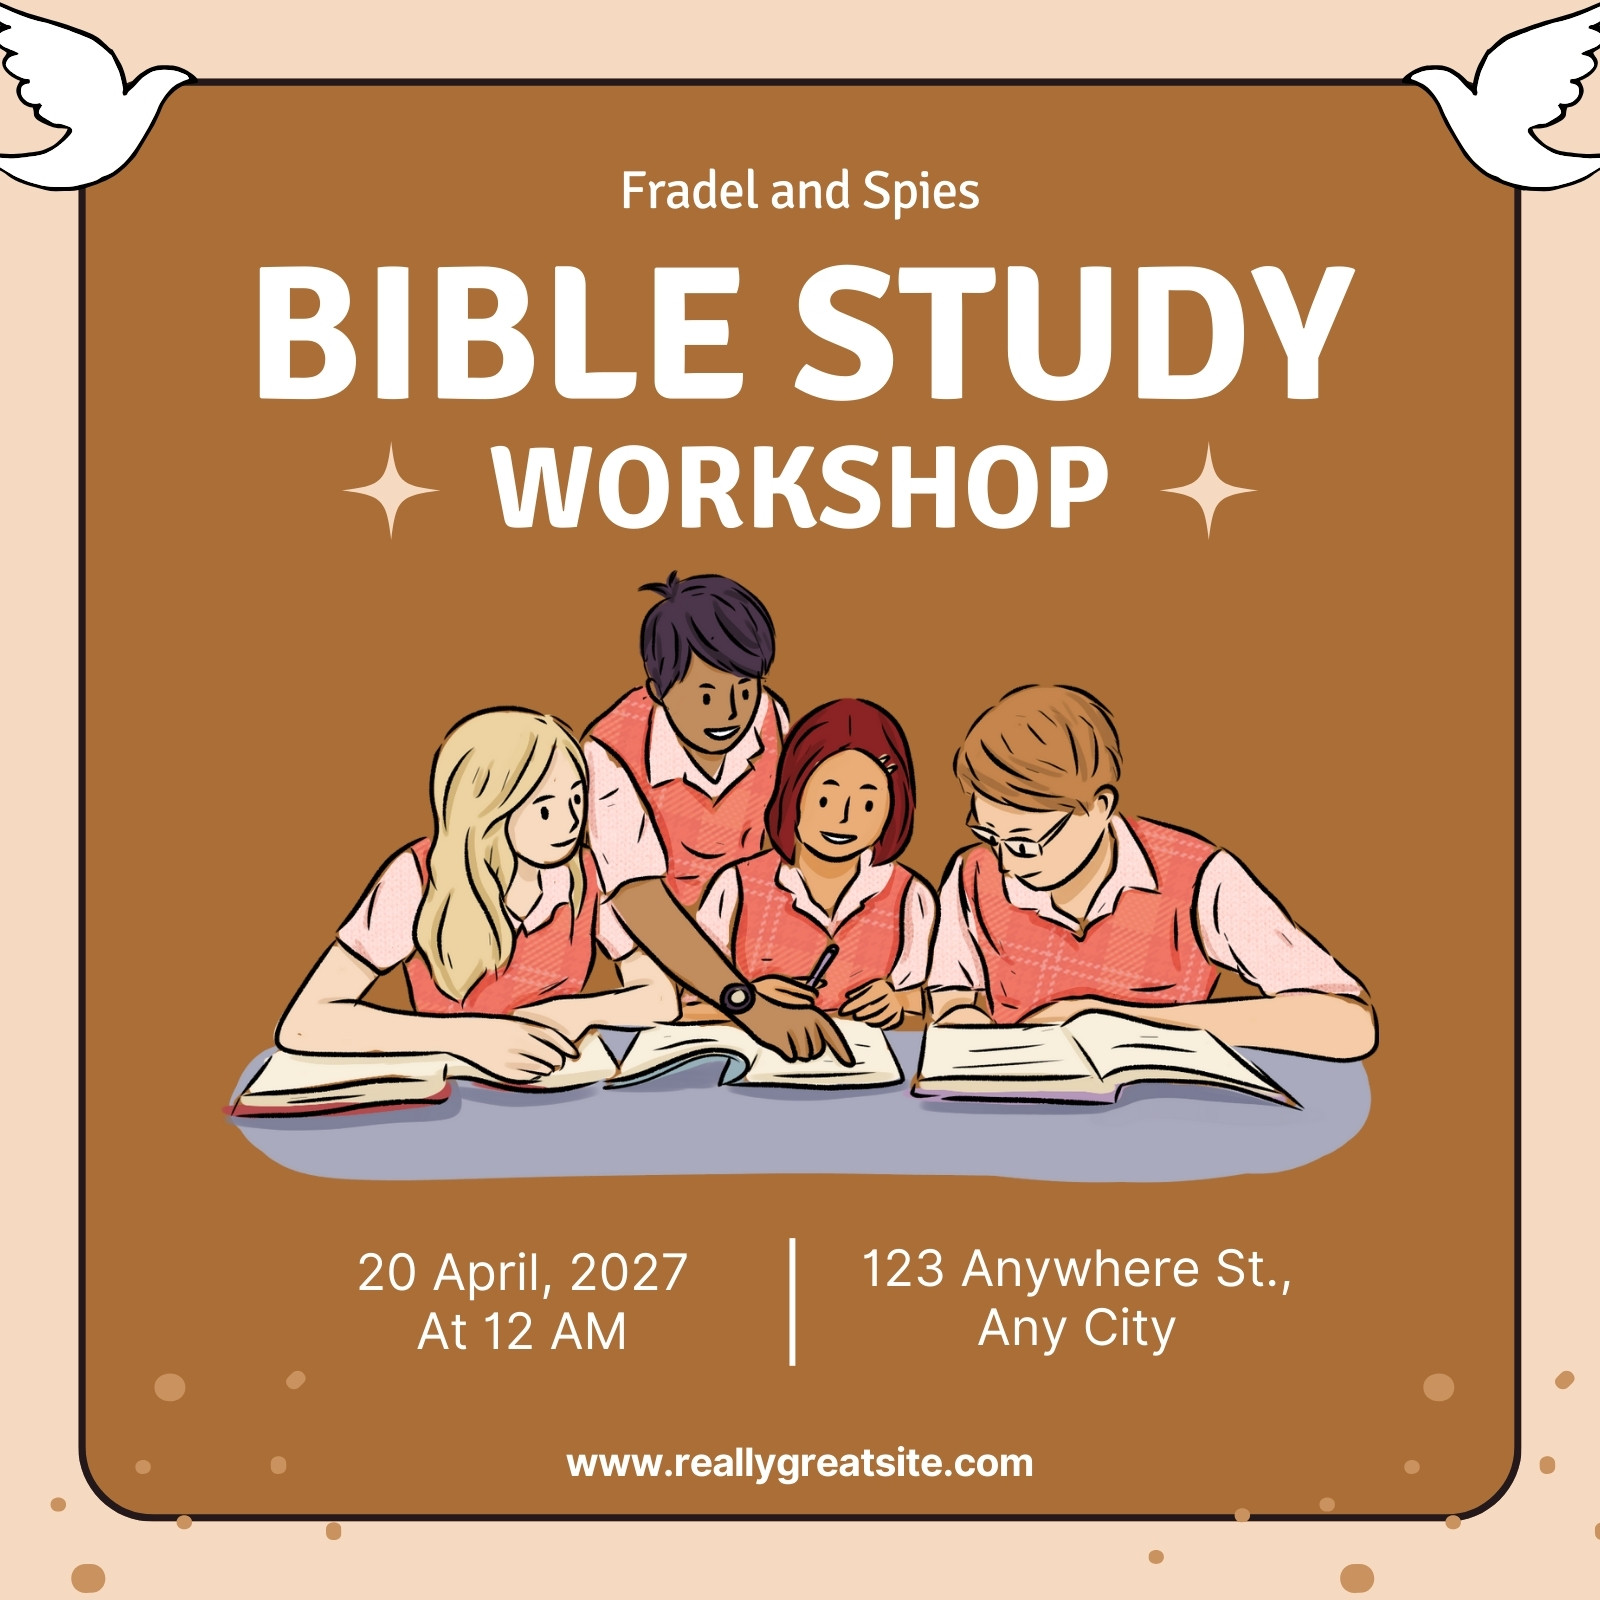 Brown Illustrative Bible Study Workshop Facebook Post